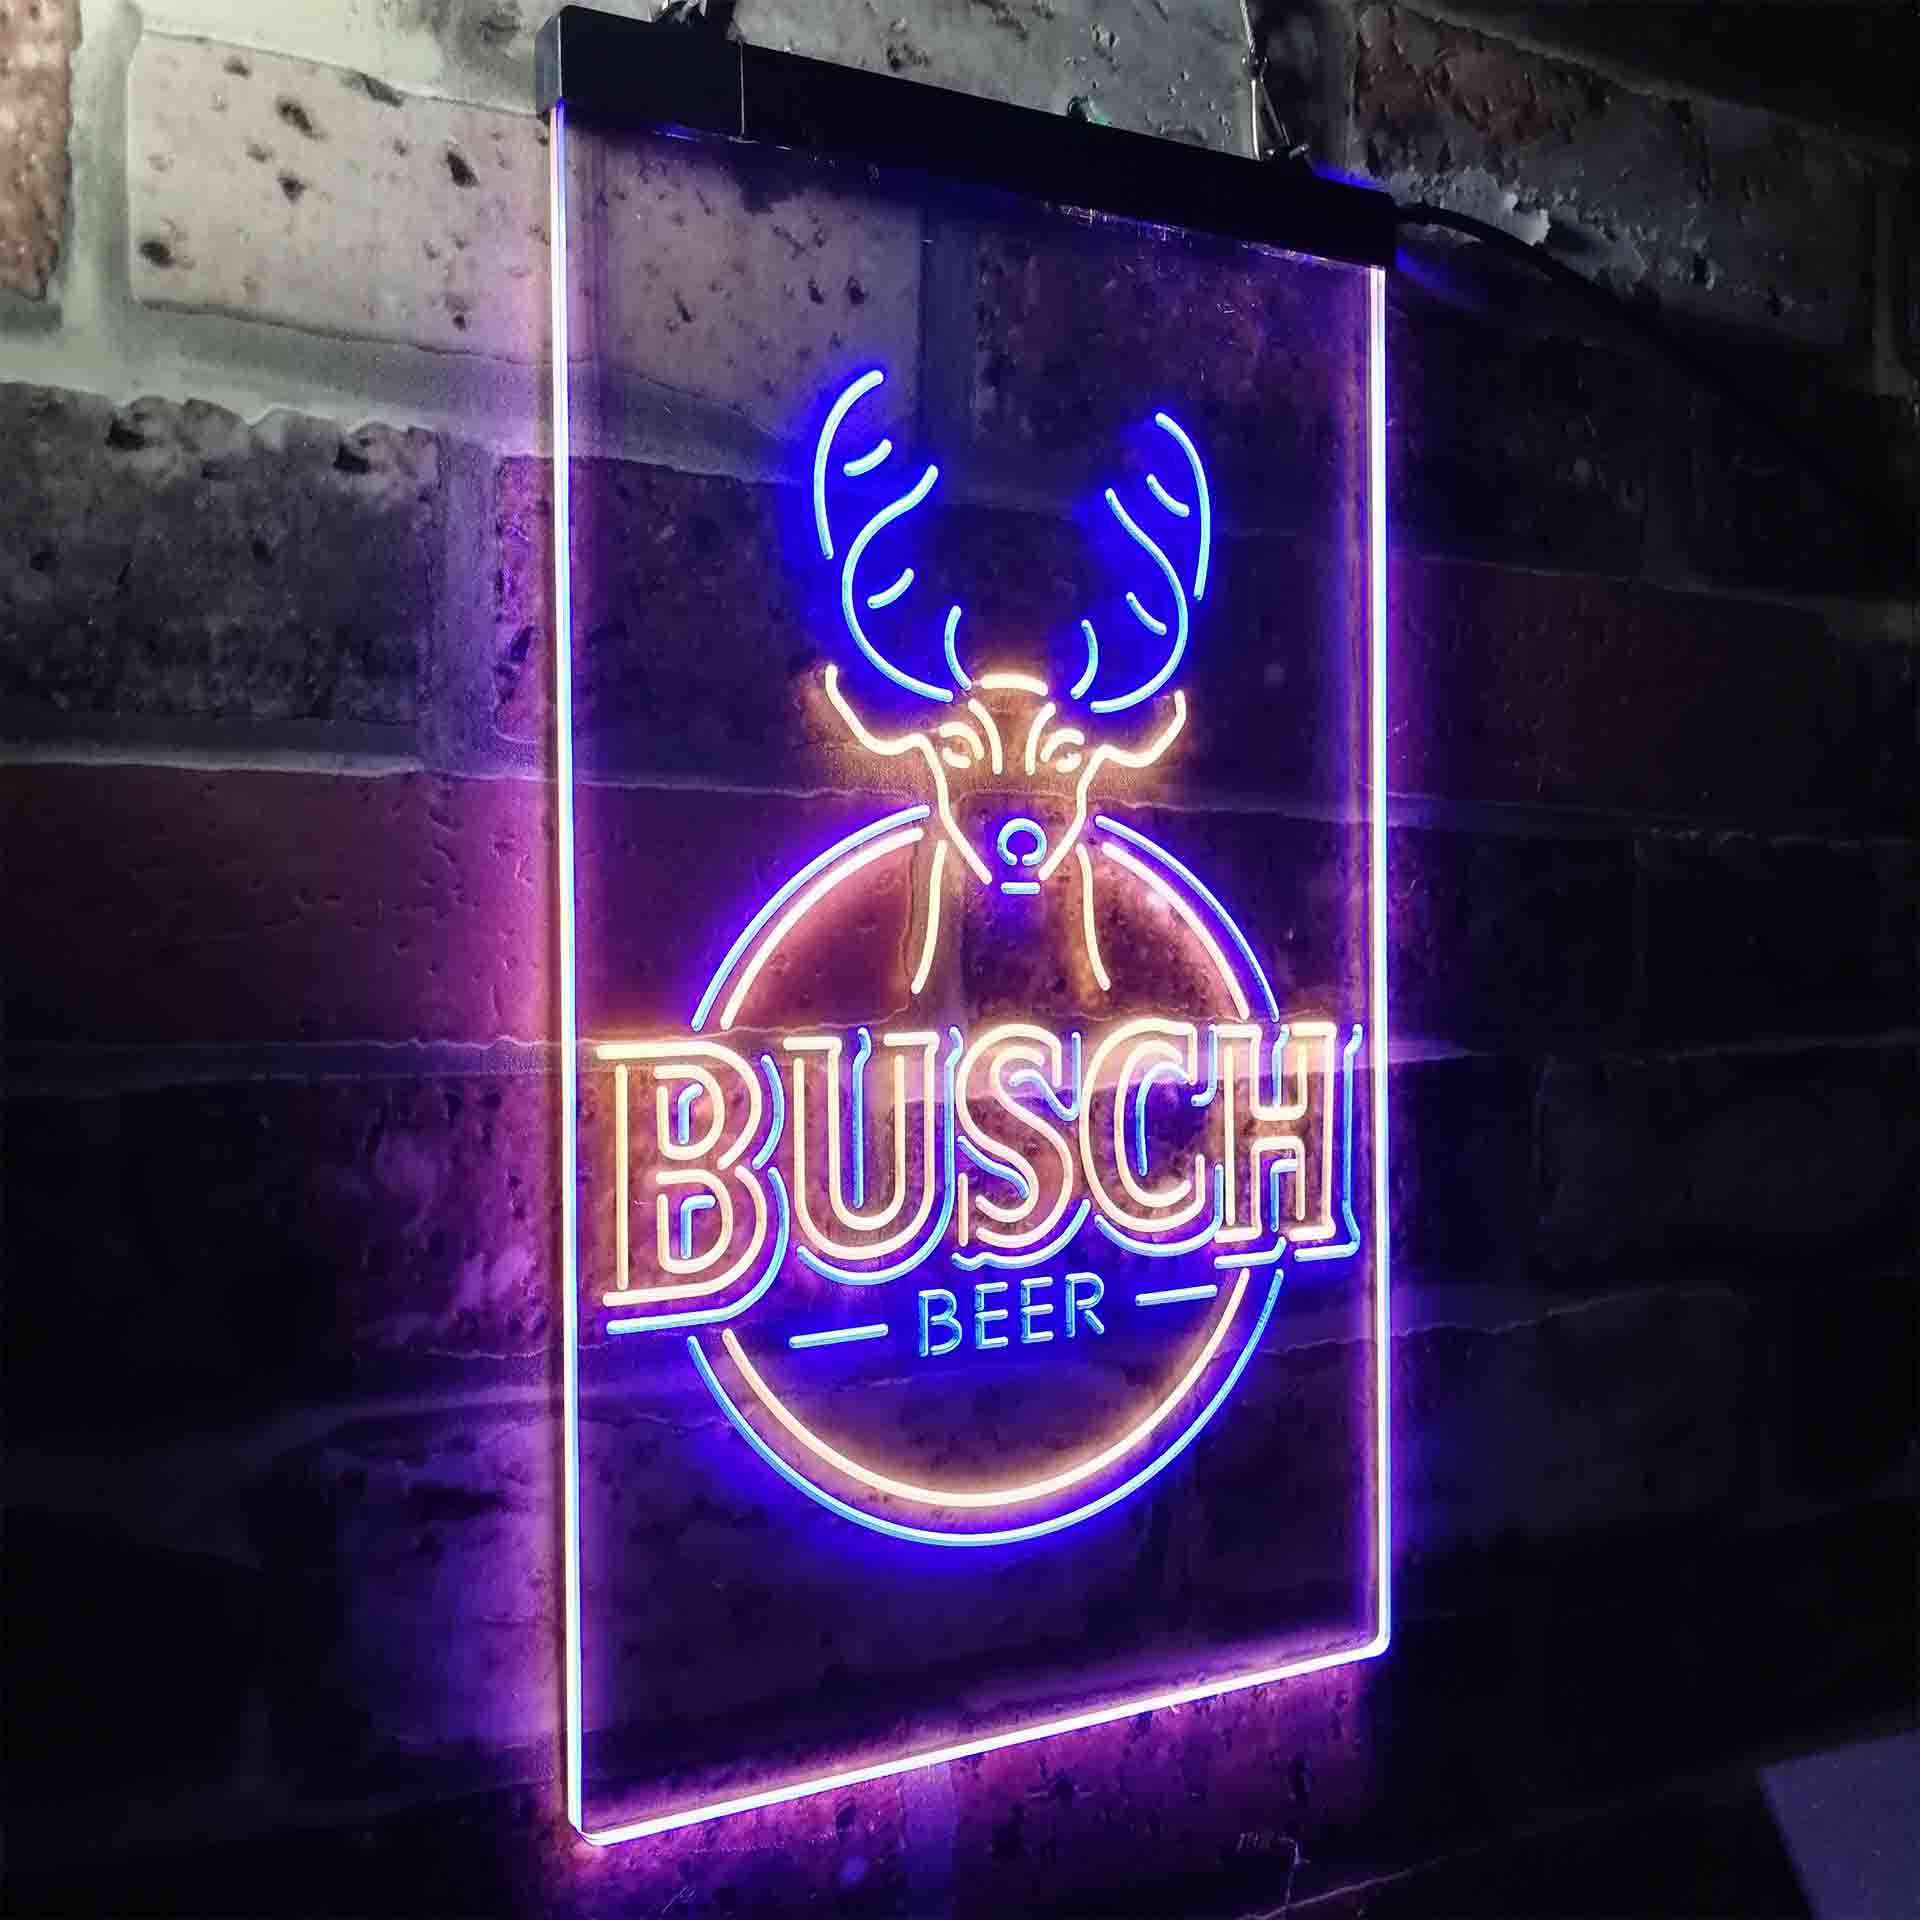 Buschs Beer Deer Vertical Circle Neon-Like LED Sign